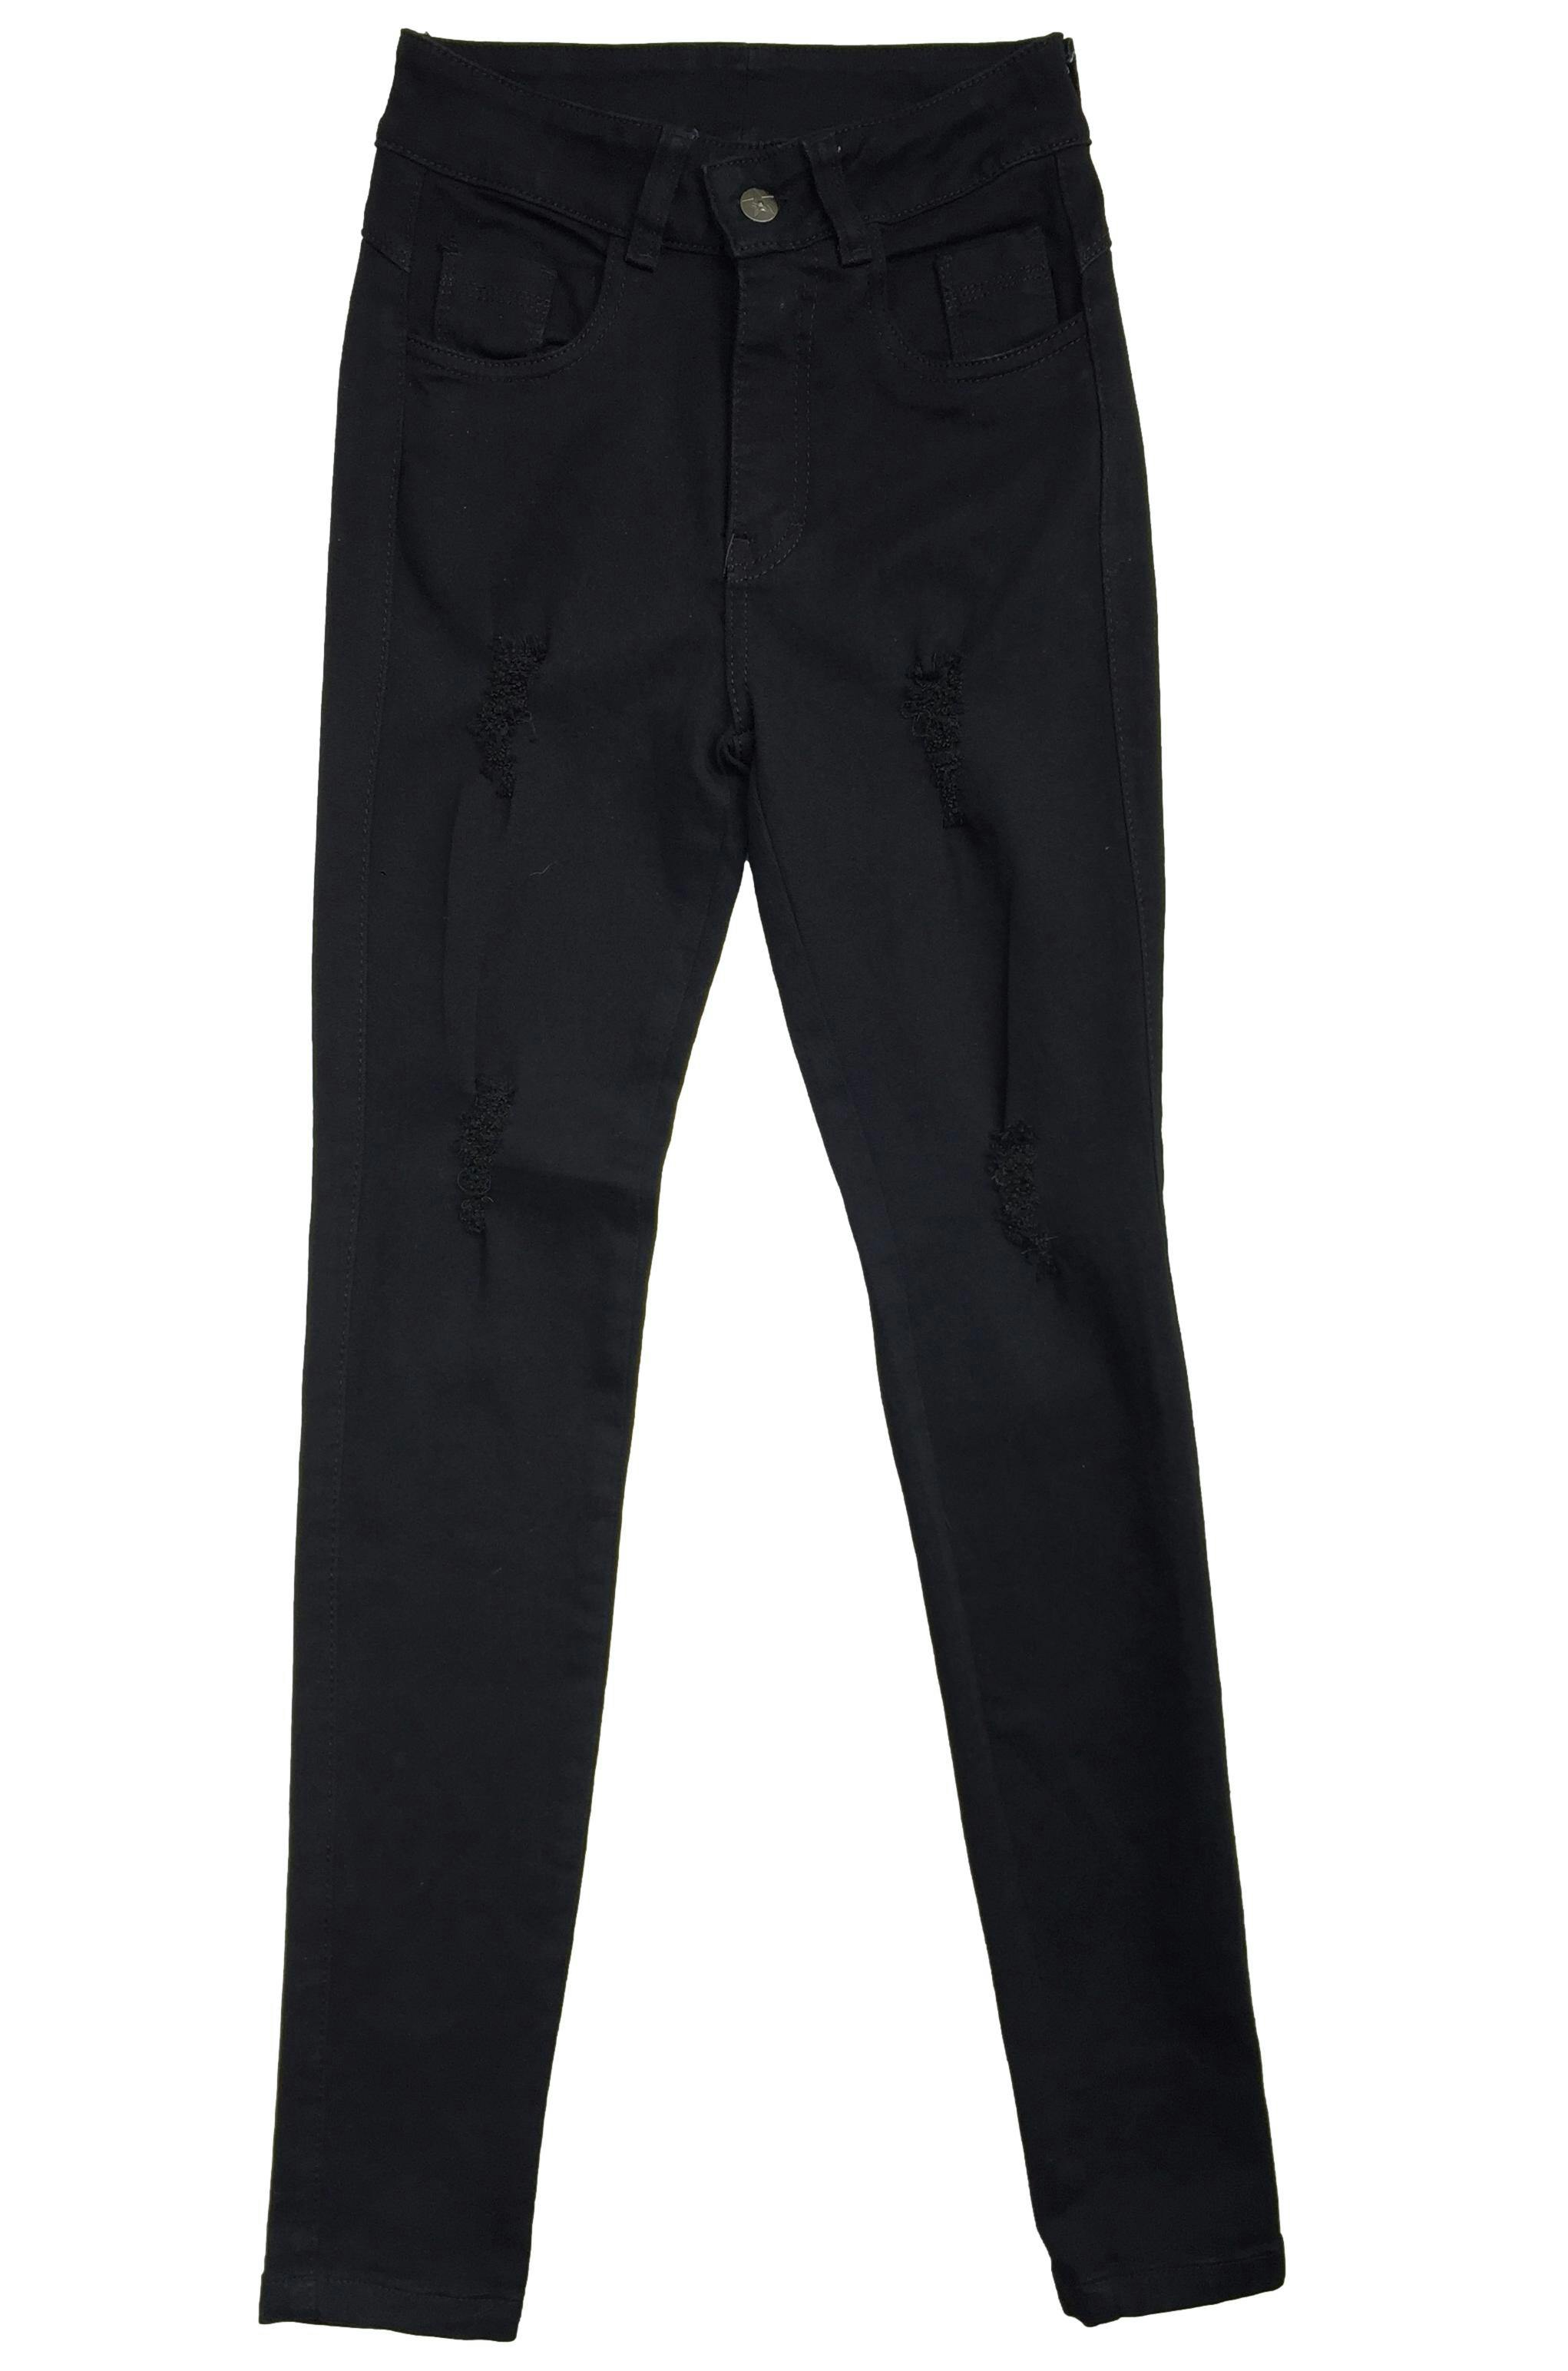 Pantalón jean negro con detalles rasgados, four pockets. Cintura 63 cm, Tiro 27 cm, Largo 99 cm.